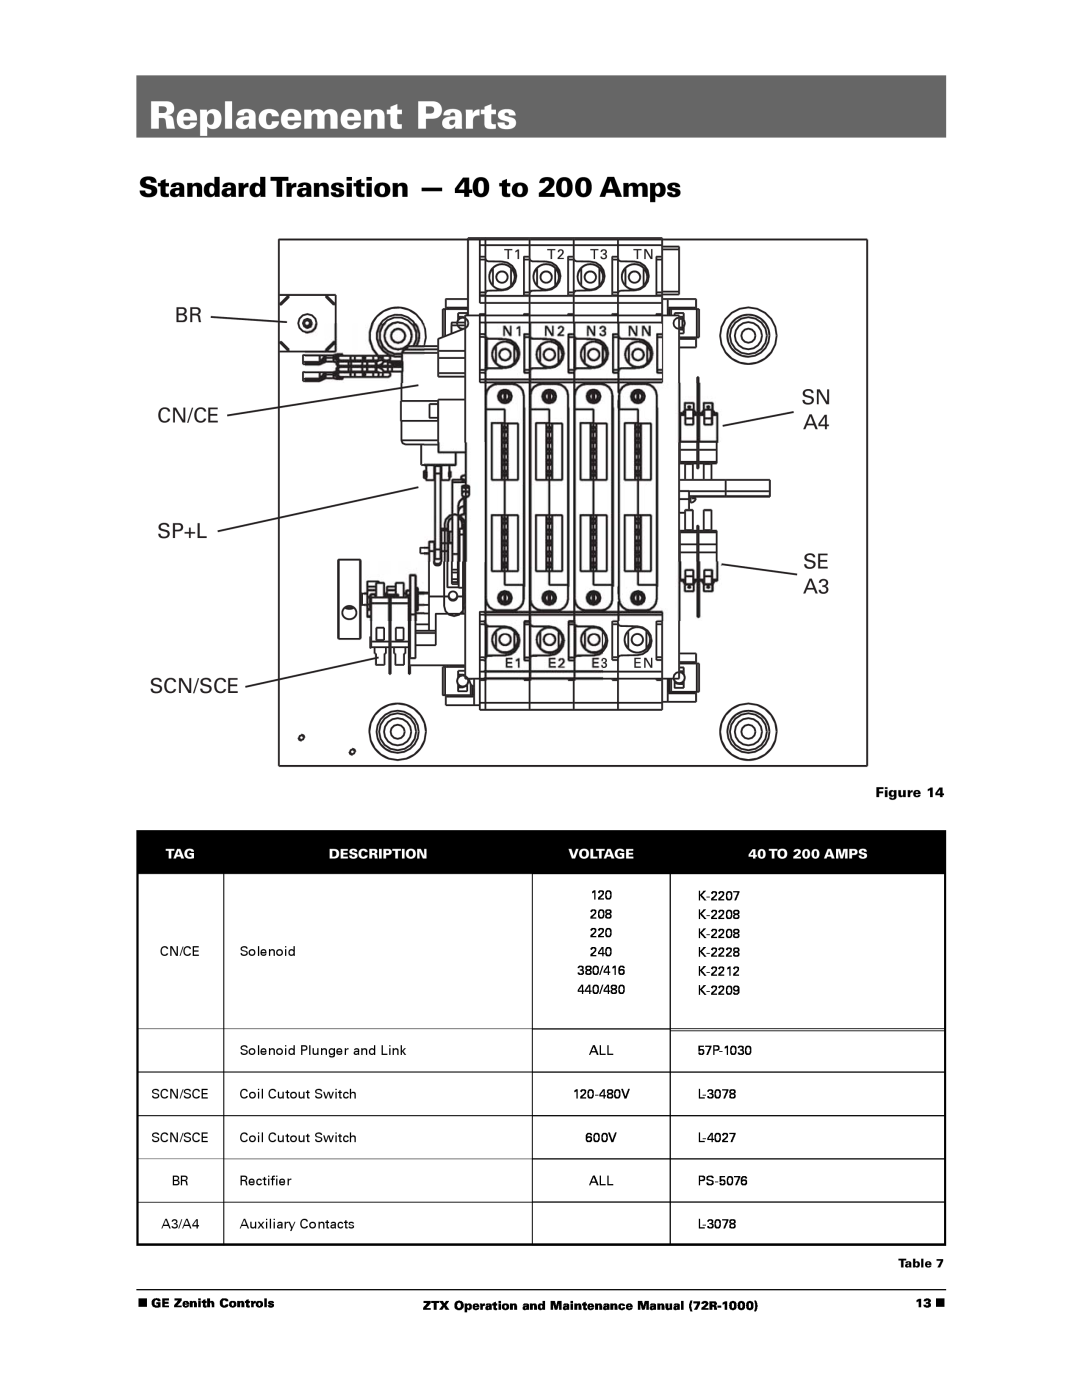 GE ZTX Replacement Parts, StandardTransition - 40 to 200 Amps, Br Cn/Ce Sp+L Scn/Sce, SN A4 SE A3, Description, Voltage 